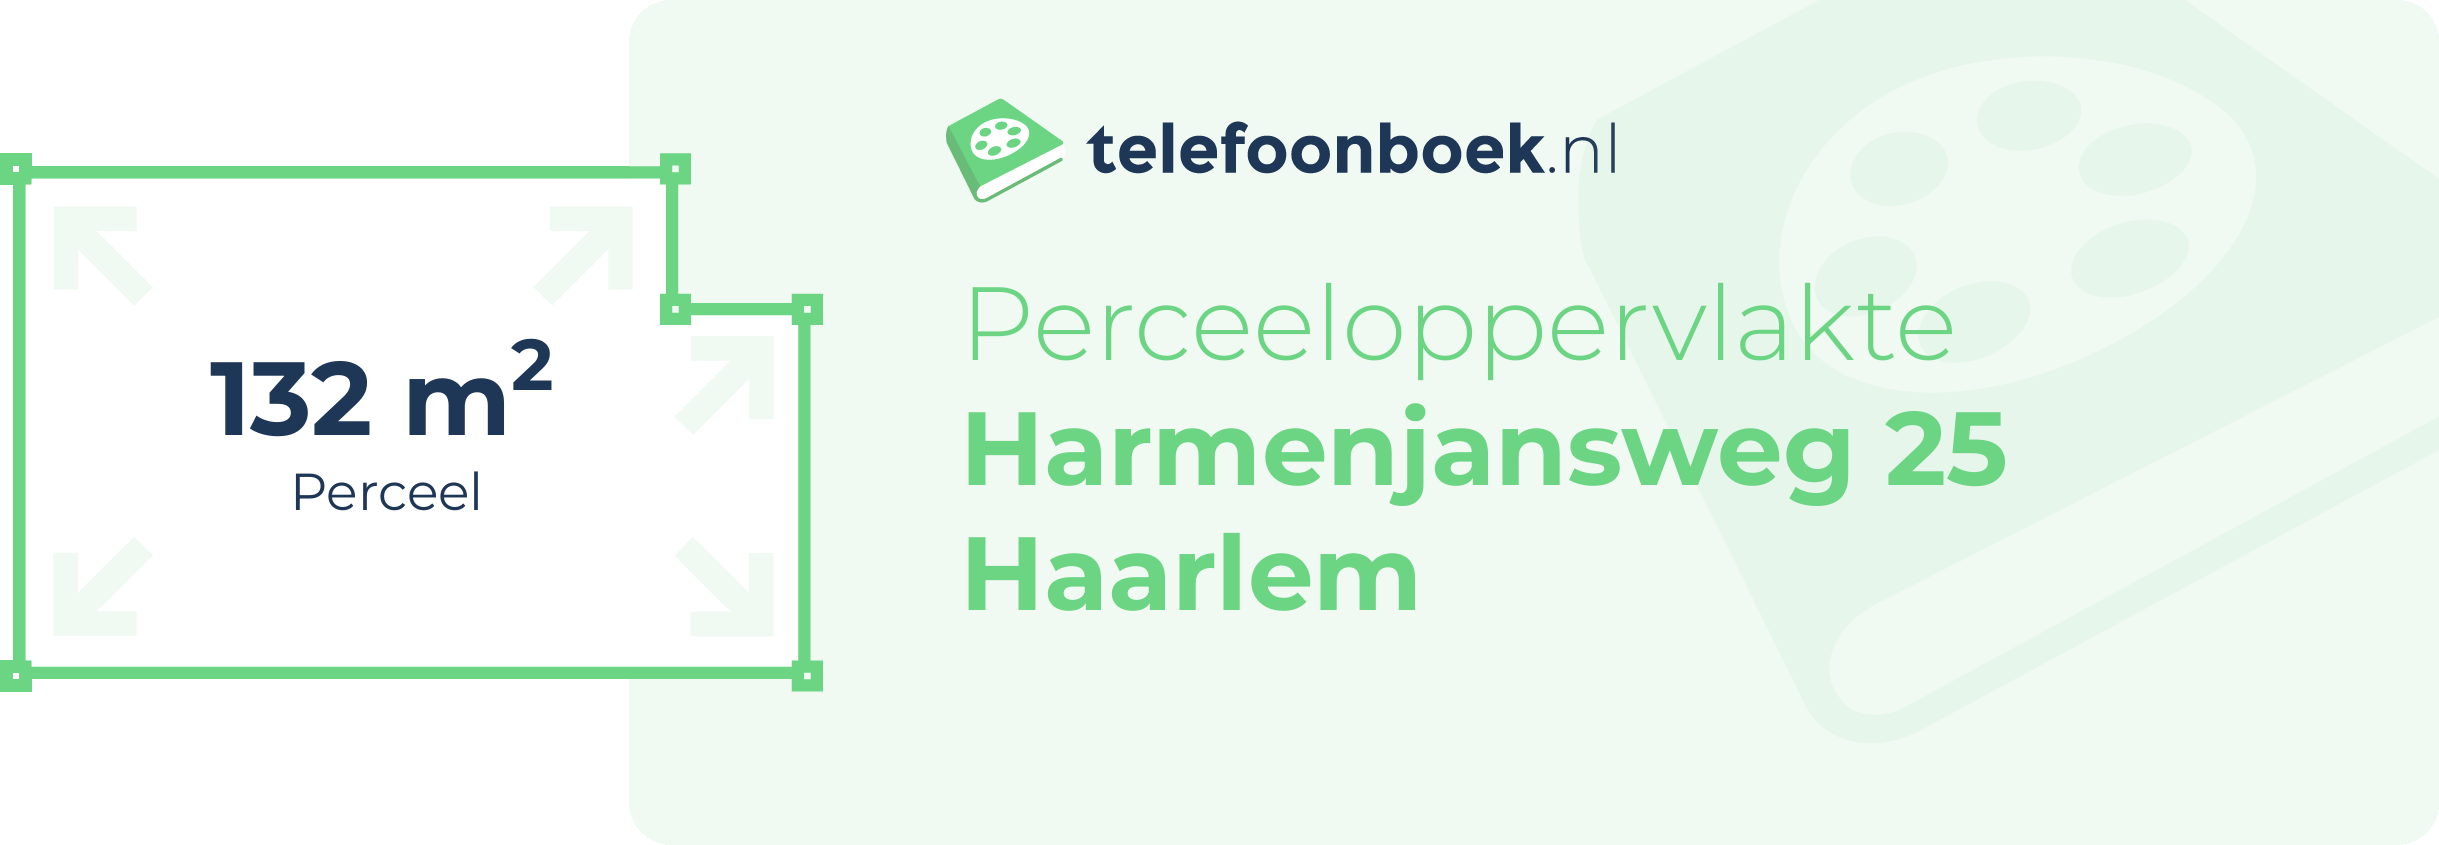 Perceeloppervlakte Harmenjansweg 25 Haarlem